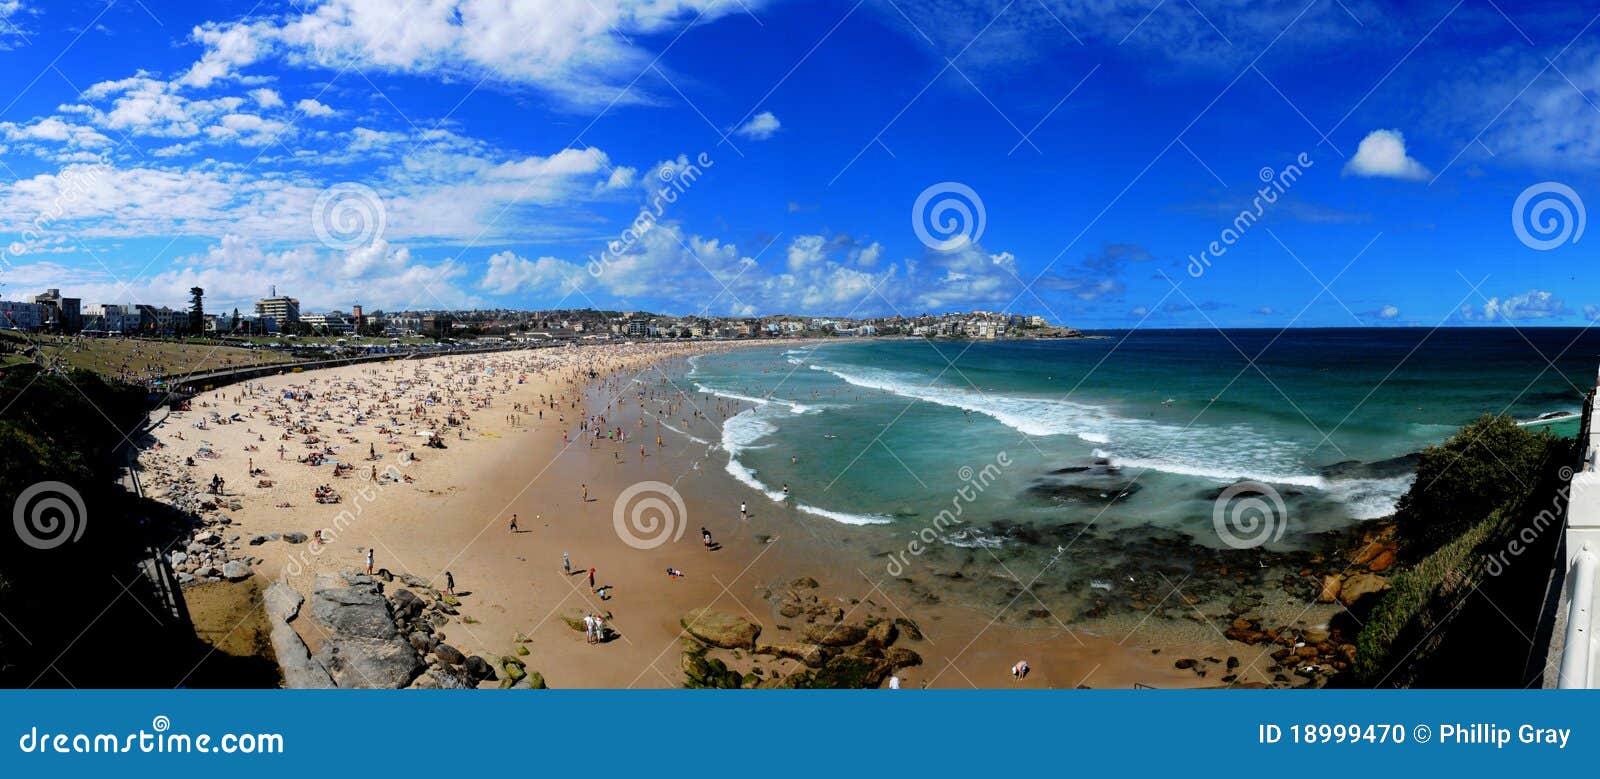 bondi beach panorama